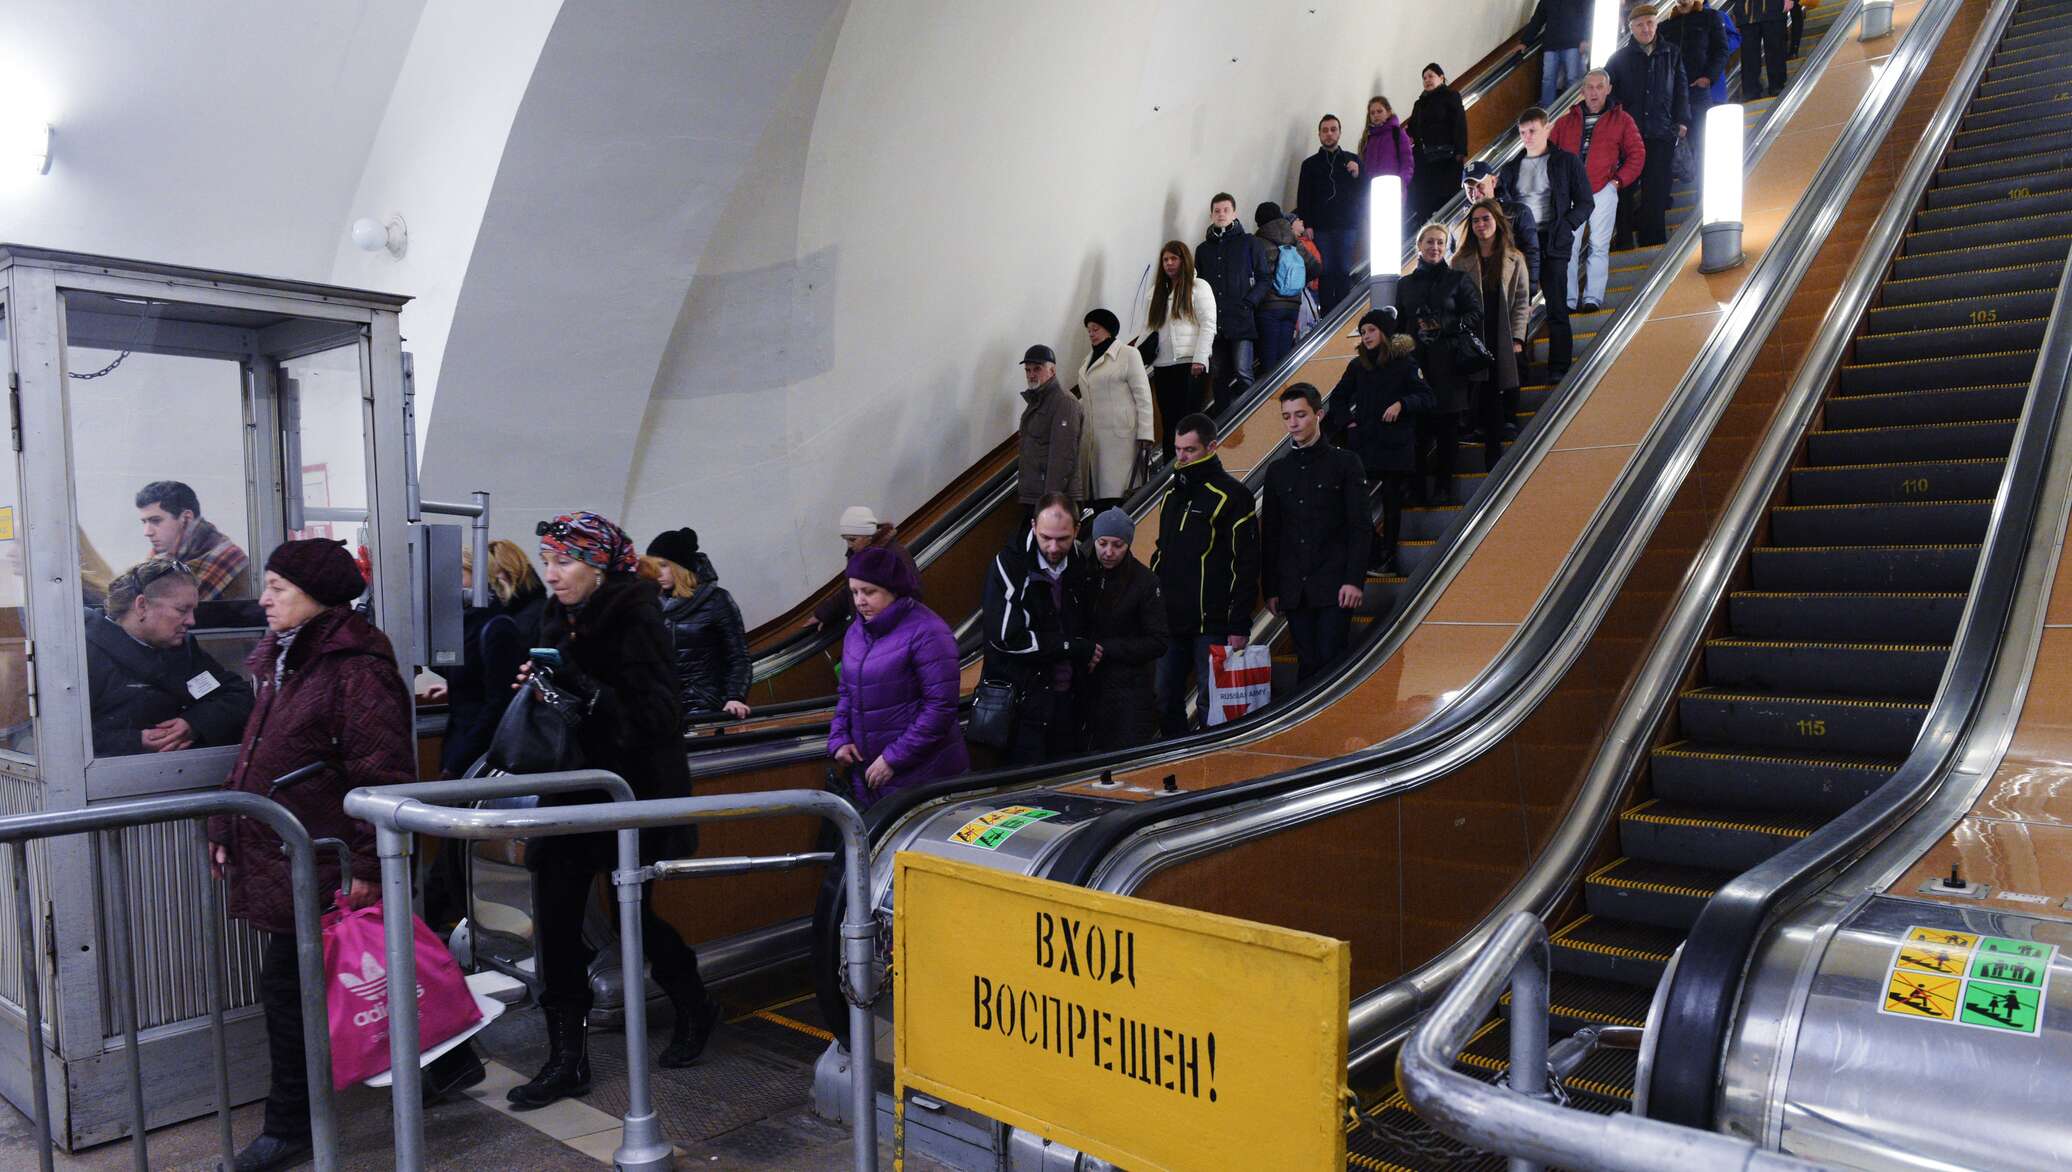 Эскалатор метрополитена поднимает неподвижно. Люди на эскалаторе в метро. Человек спускается в метро. Пассажиры спускаются в метро на эскалаторах. Спуститься в метро на эскалаторе.